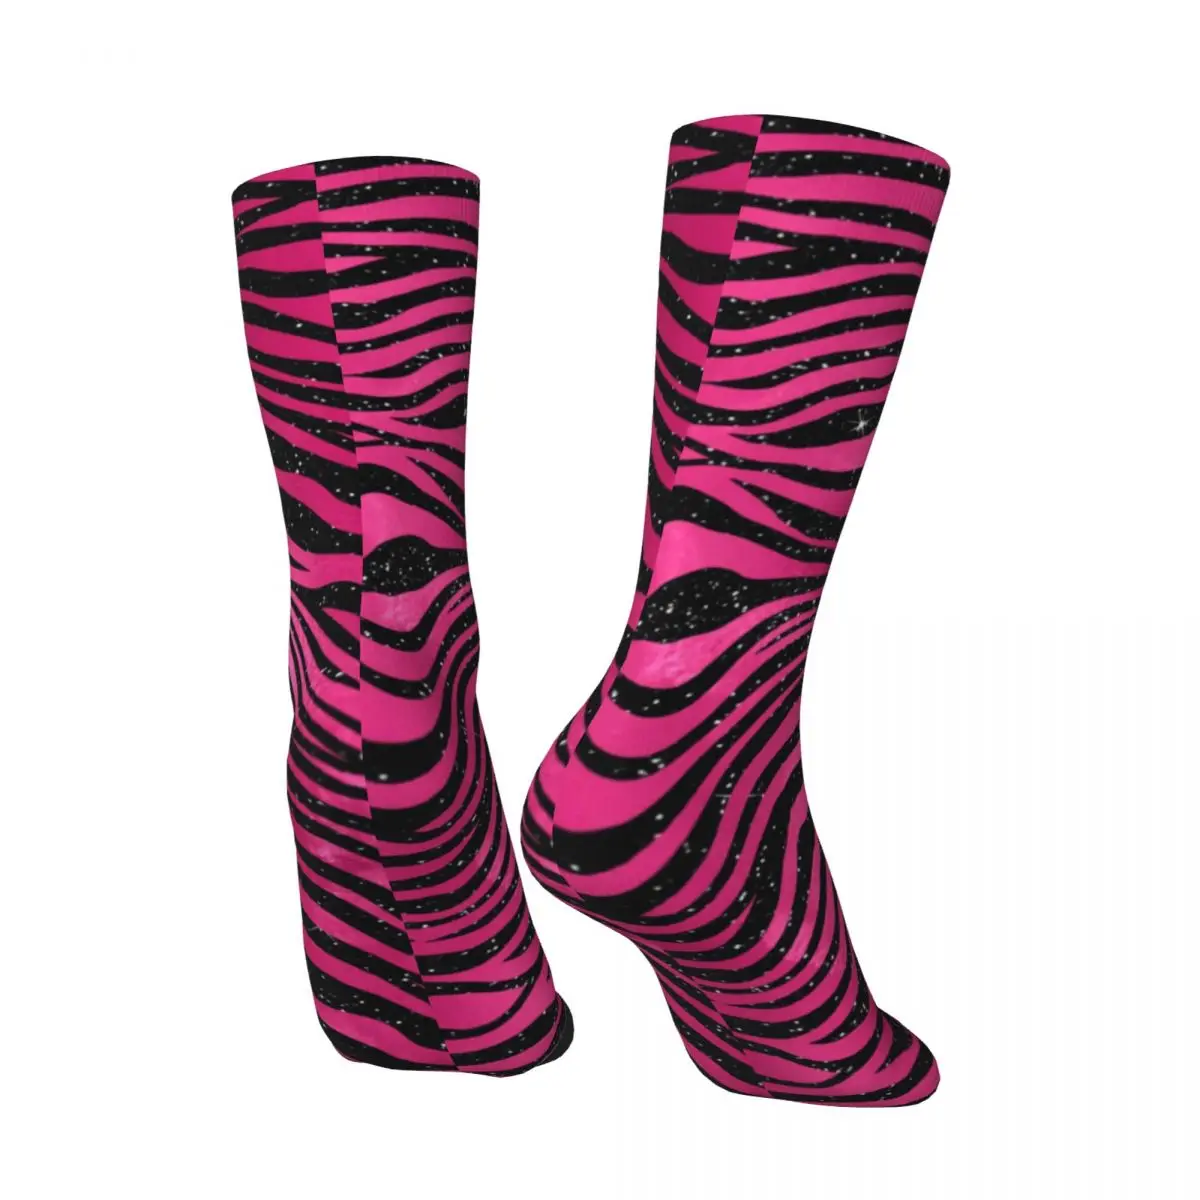 Носки с принтом тигра, ярко-розовые и черные полосатые дышащие Повседневные носки средней длины, большие Молодежные носки из химического волокна для кровати